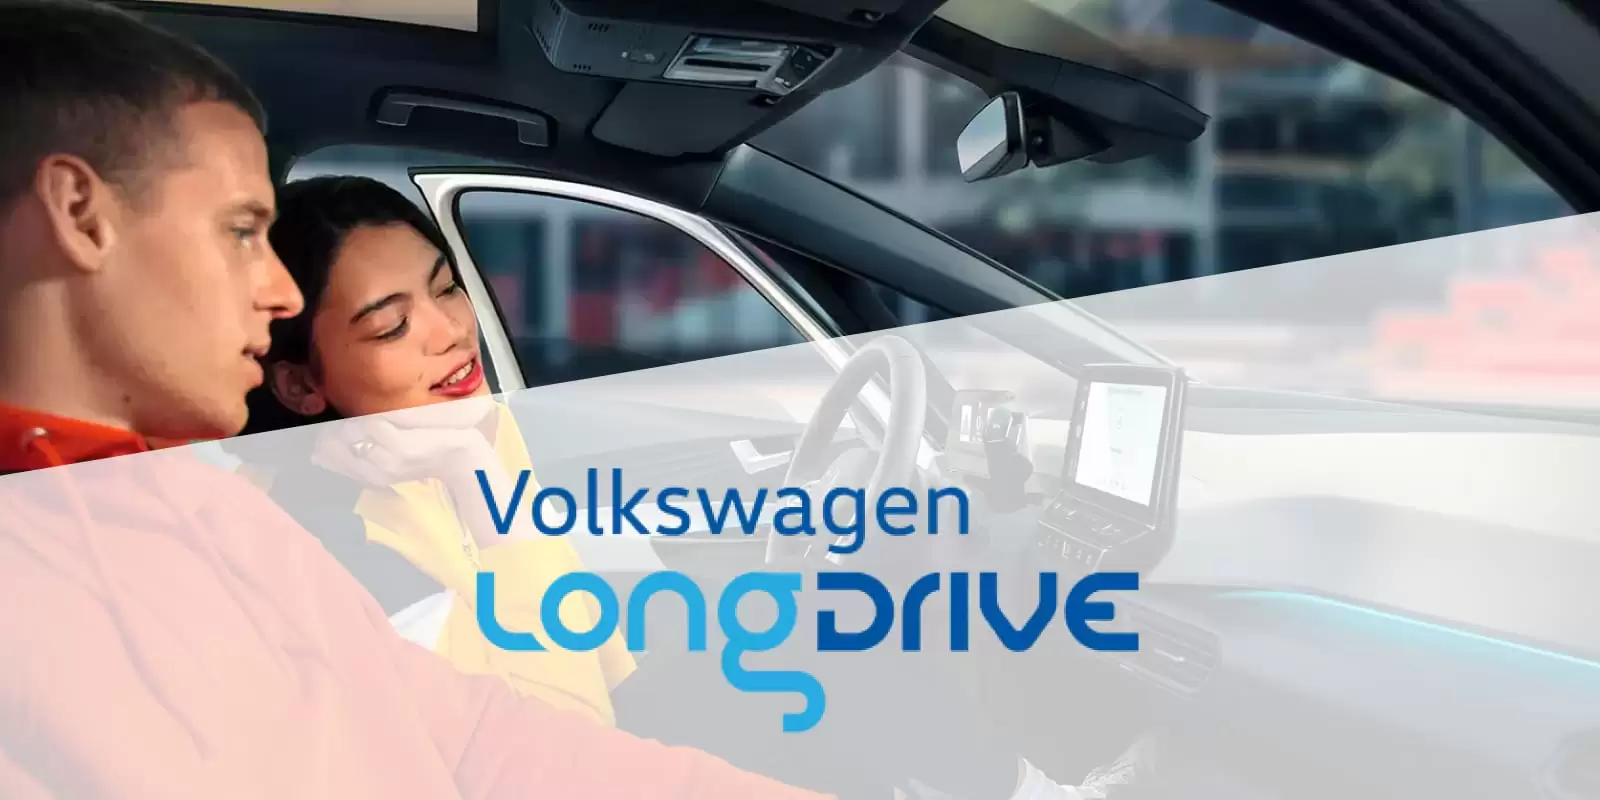 Una pareja dentro de un coche con el logo de Volkswagen Longdrive